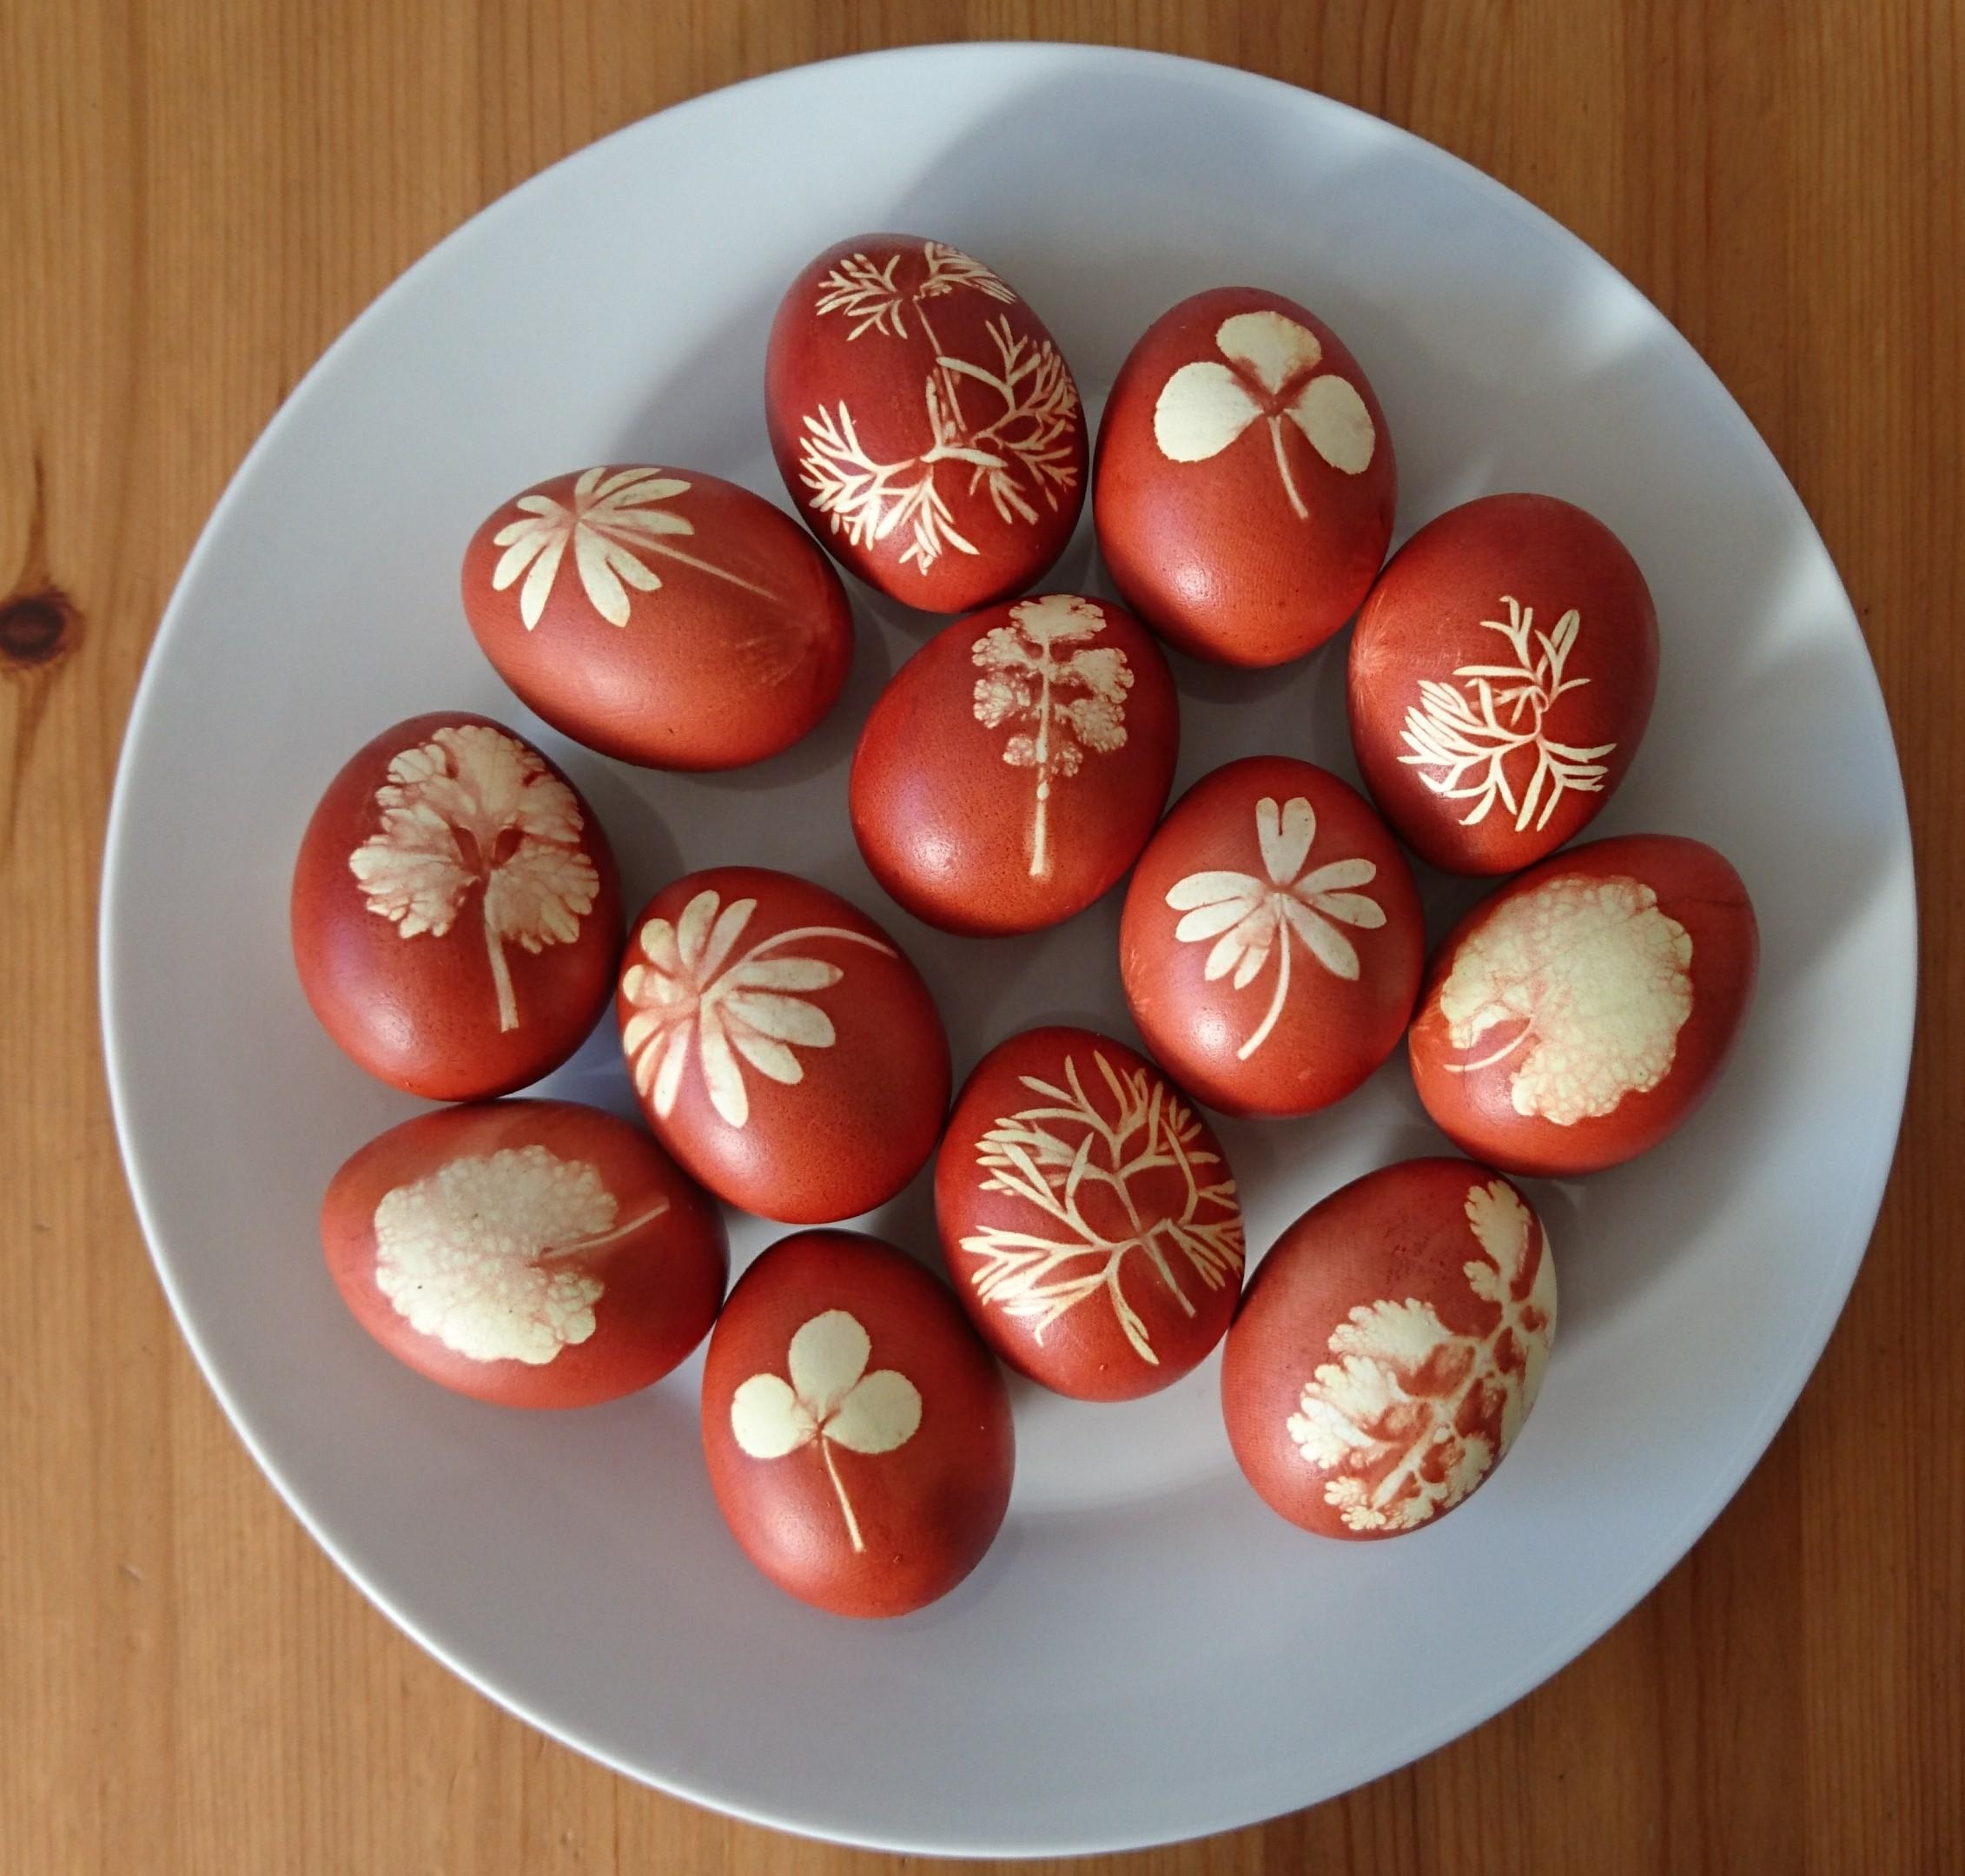 Natürlich gefärbte Eier - aus dem Zwiebelschalensud. Jedes Ei ein Unikat.
#Osterdiy #eierfärben #Ostereier #Natur